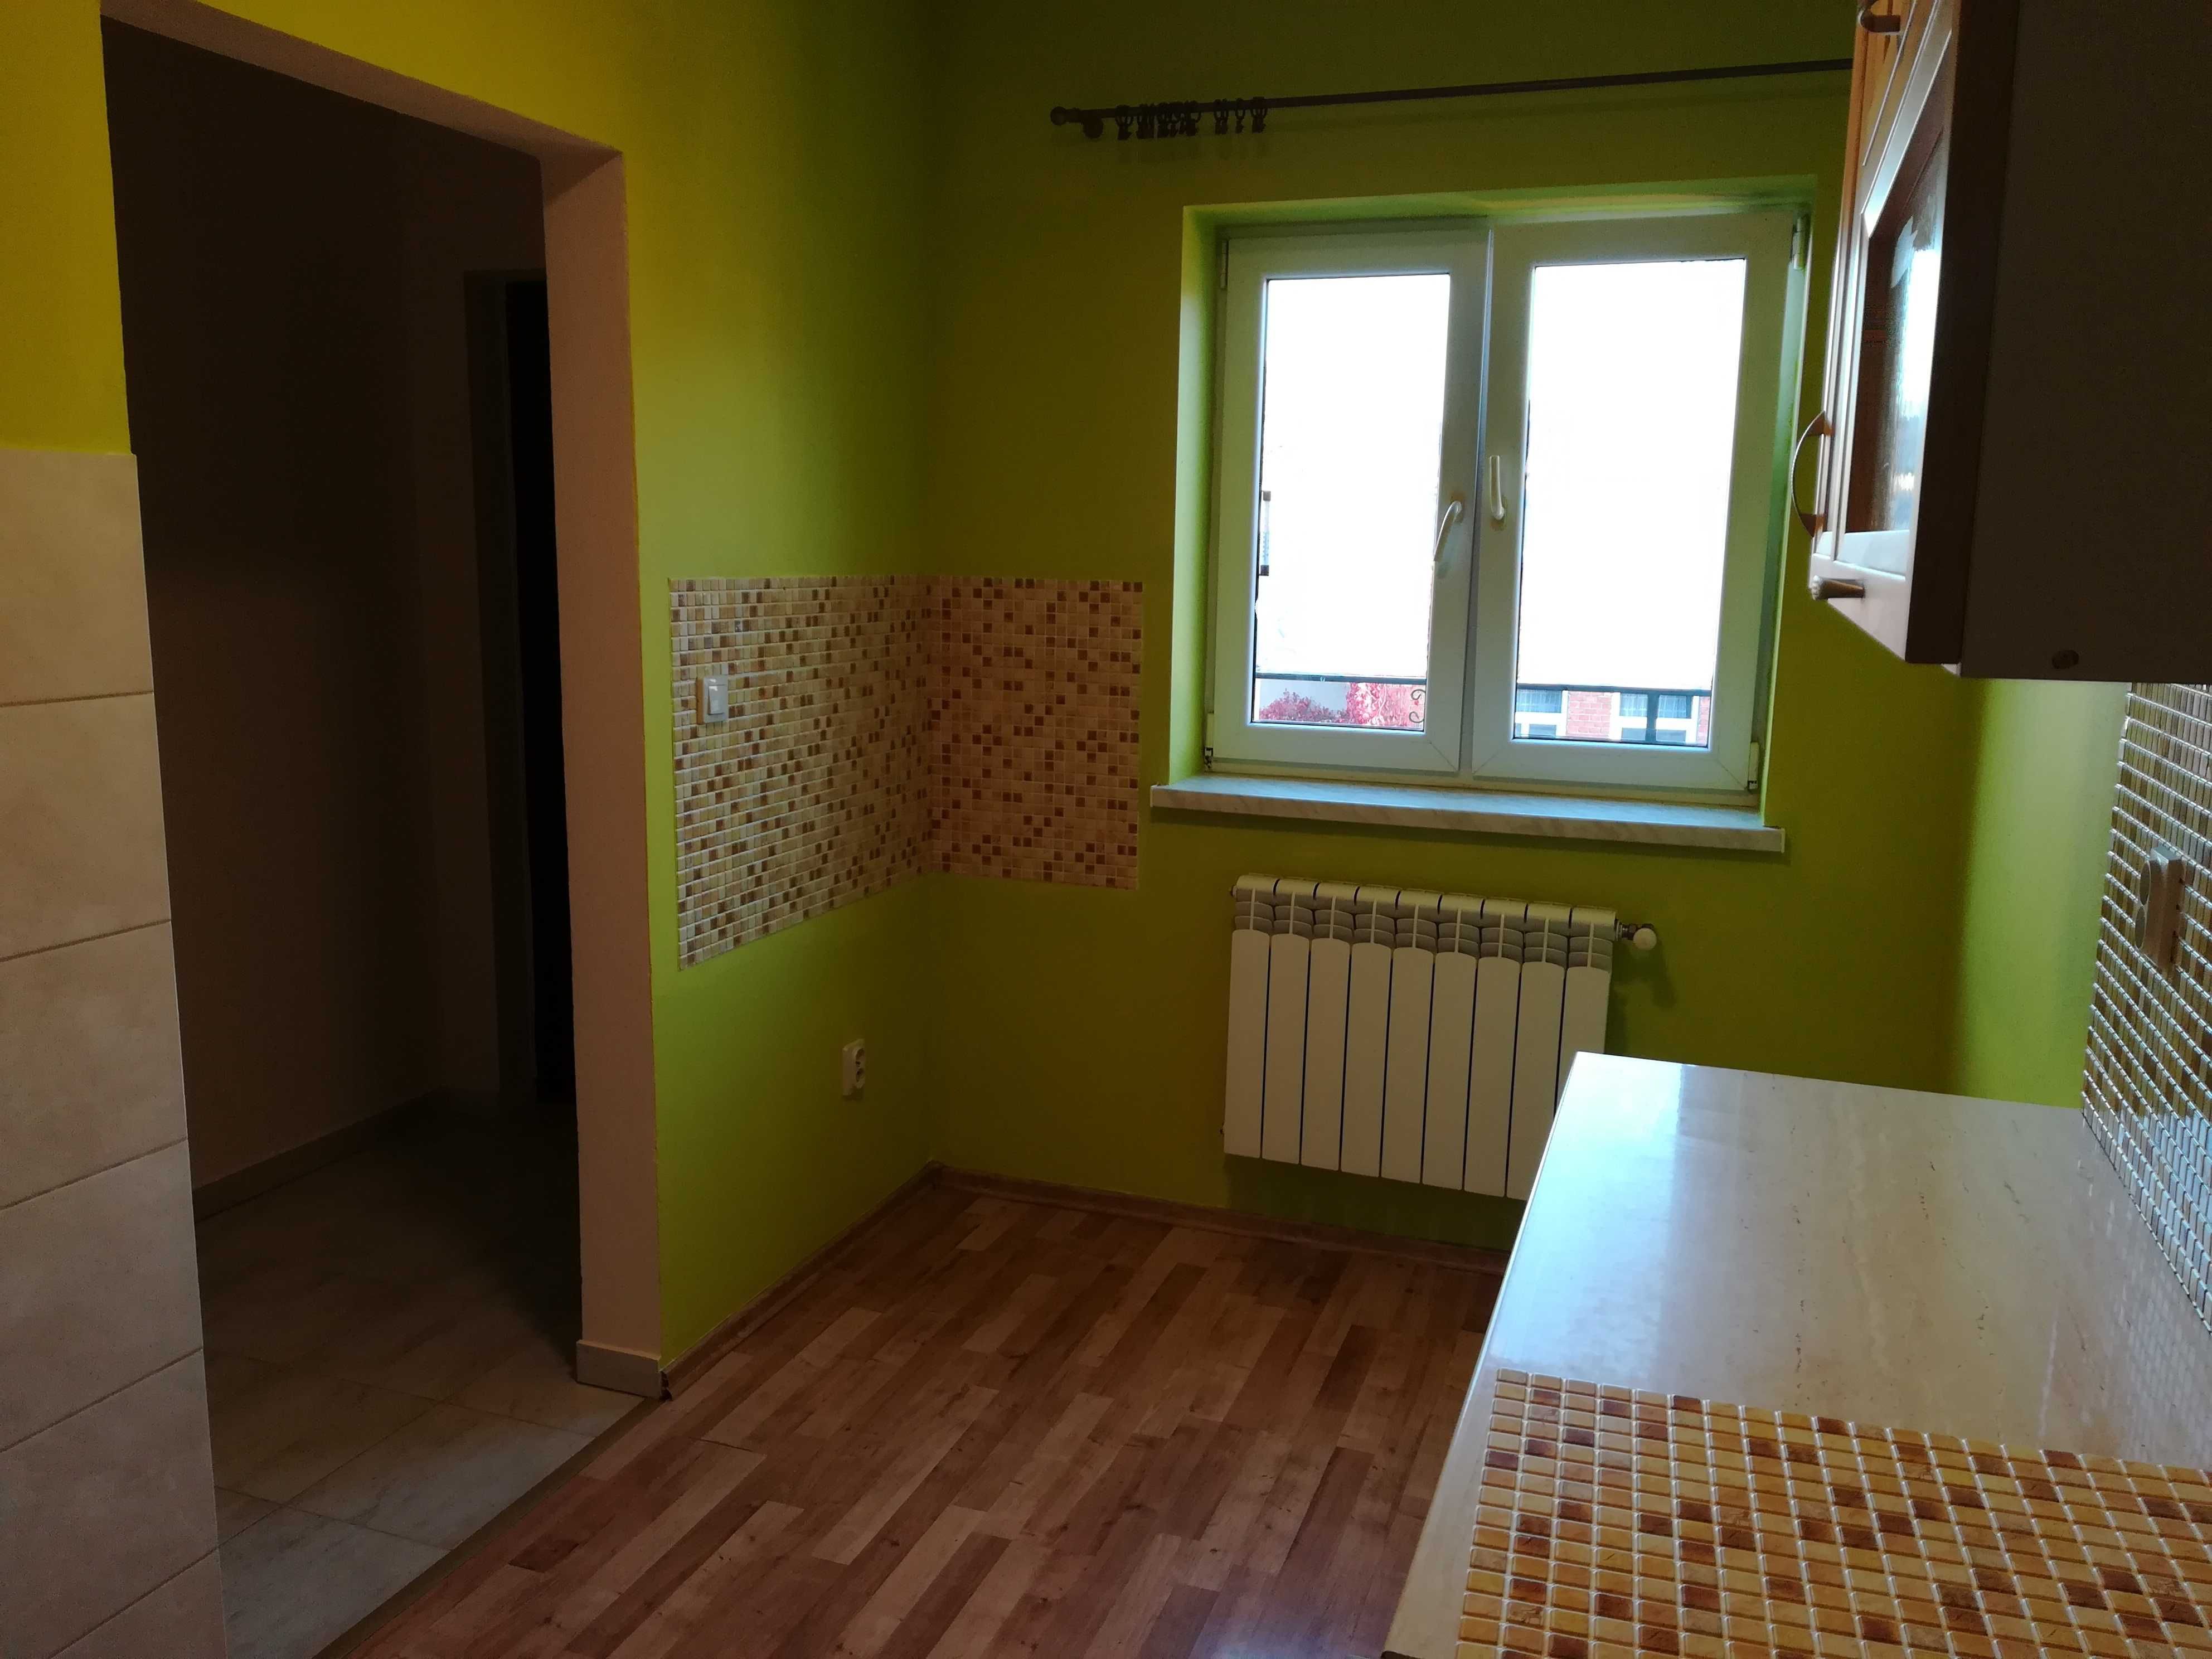 Mieszkanie do wynajęcia 2 pokoje w centrum Aleksandrowa Kujawskiego